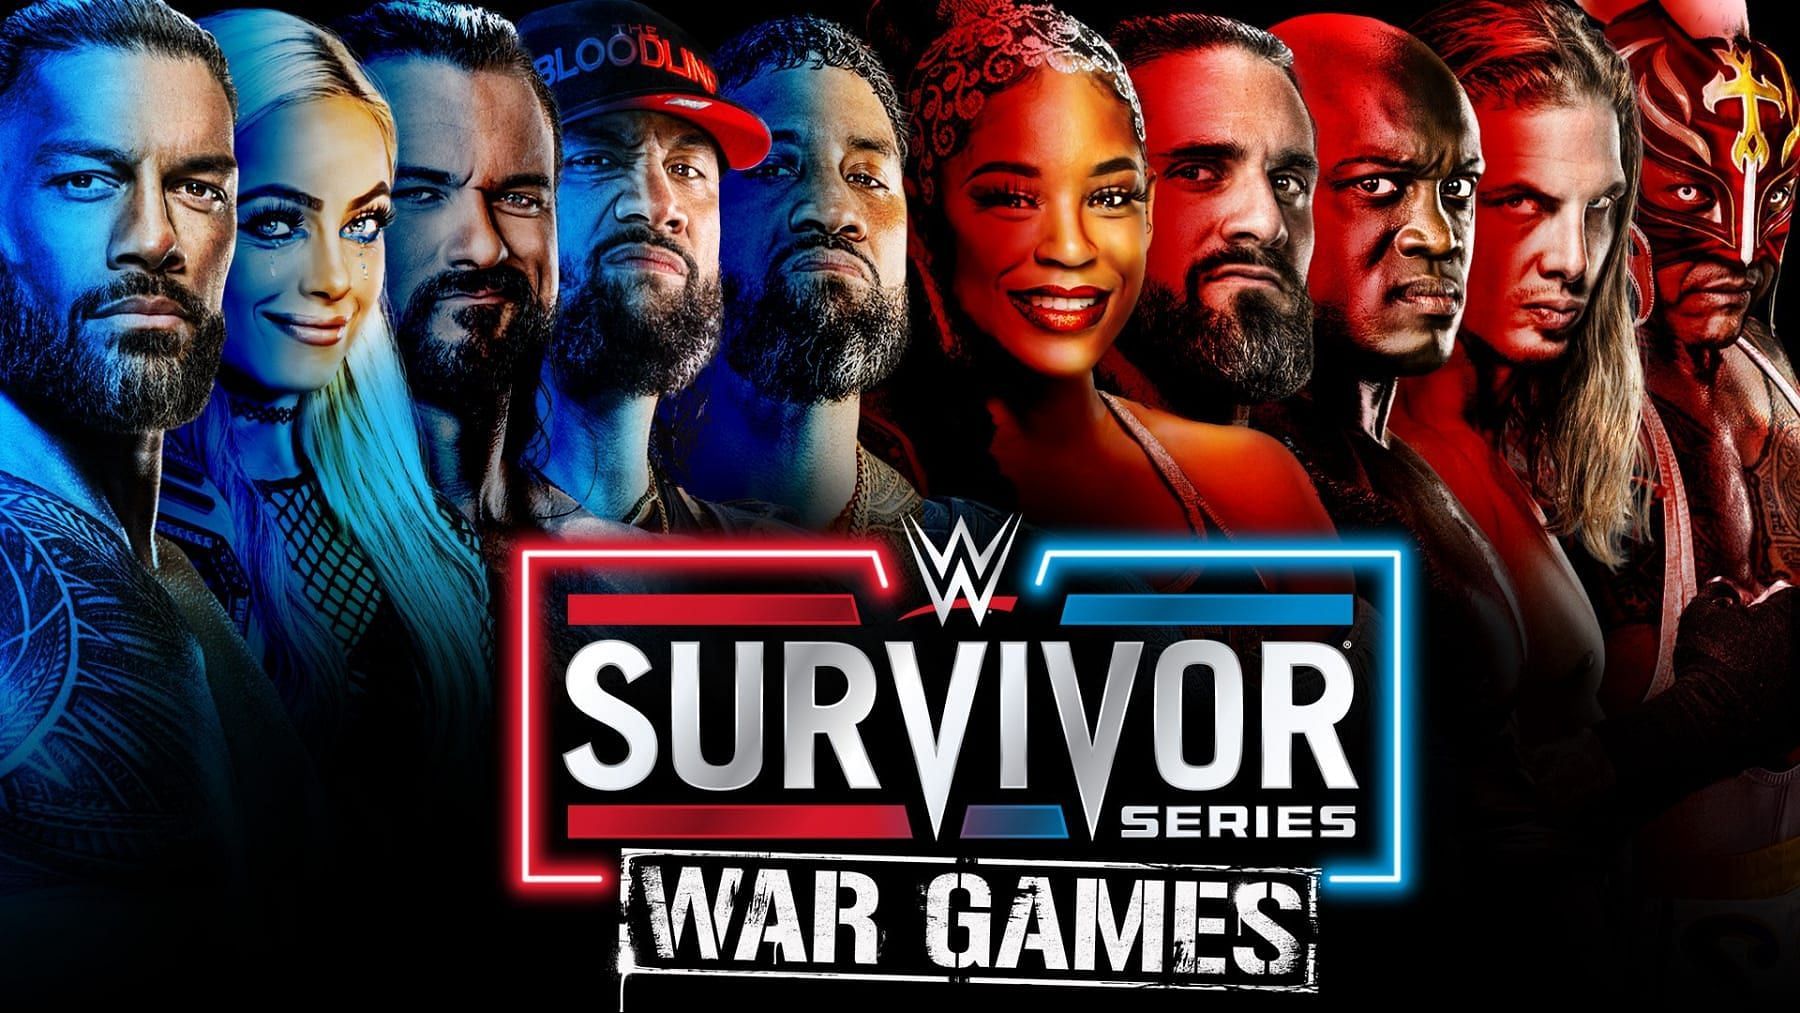 WWE Survivor Series War Games Predictions